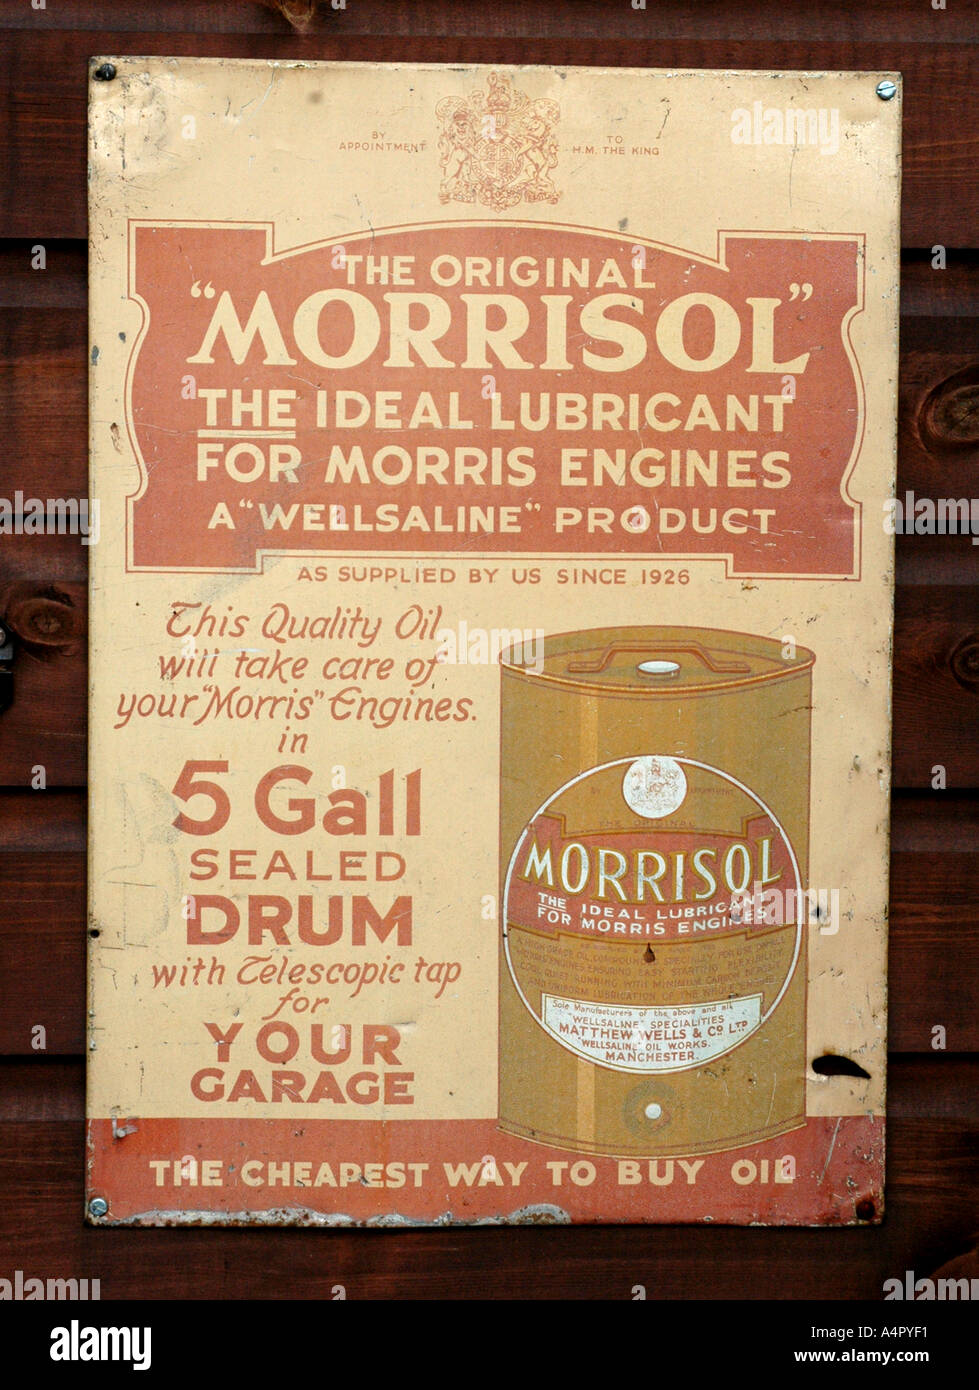 L'originale Morrisol firmare il lubrificante ideale per motori Morris un prodotto Wellsaline Foto Stock